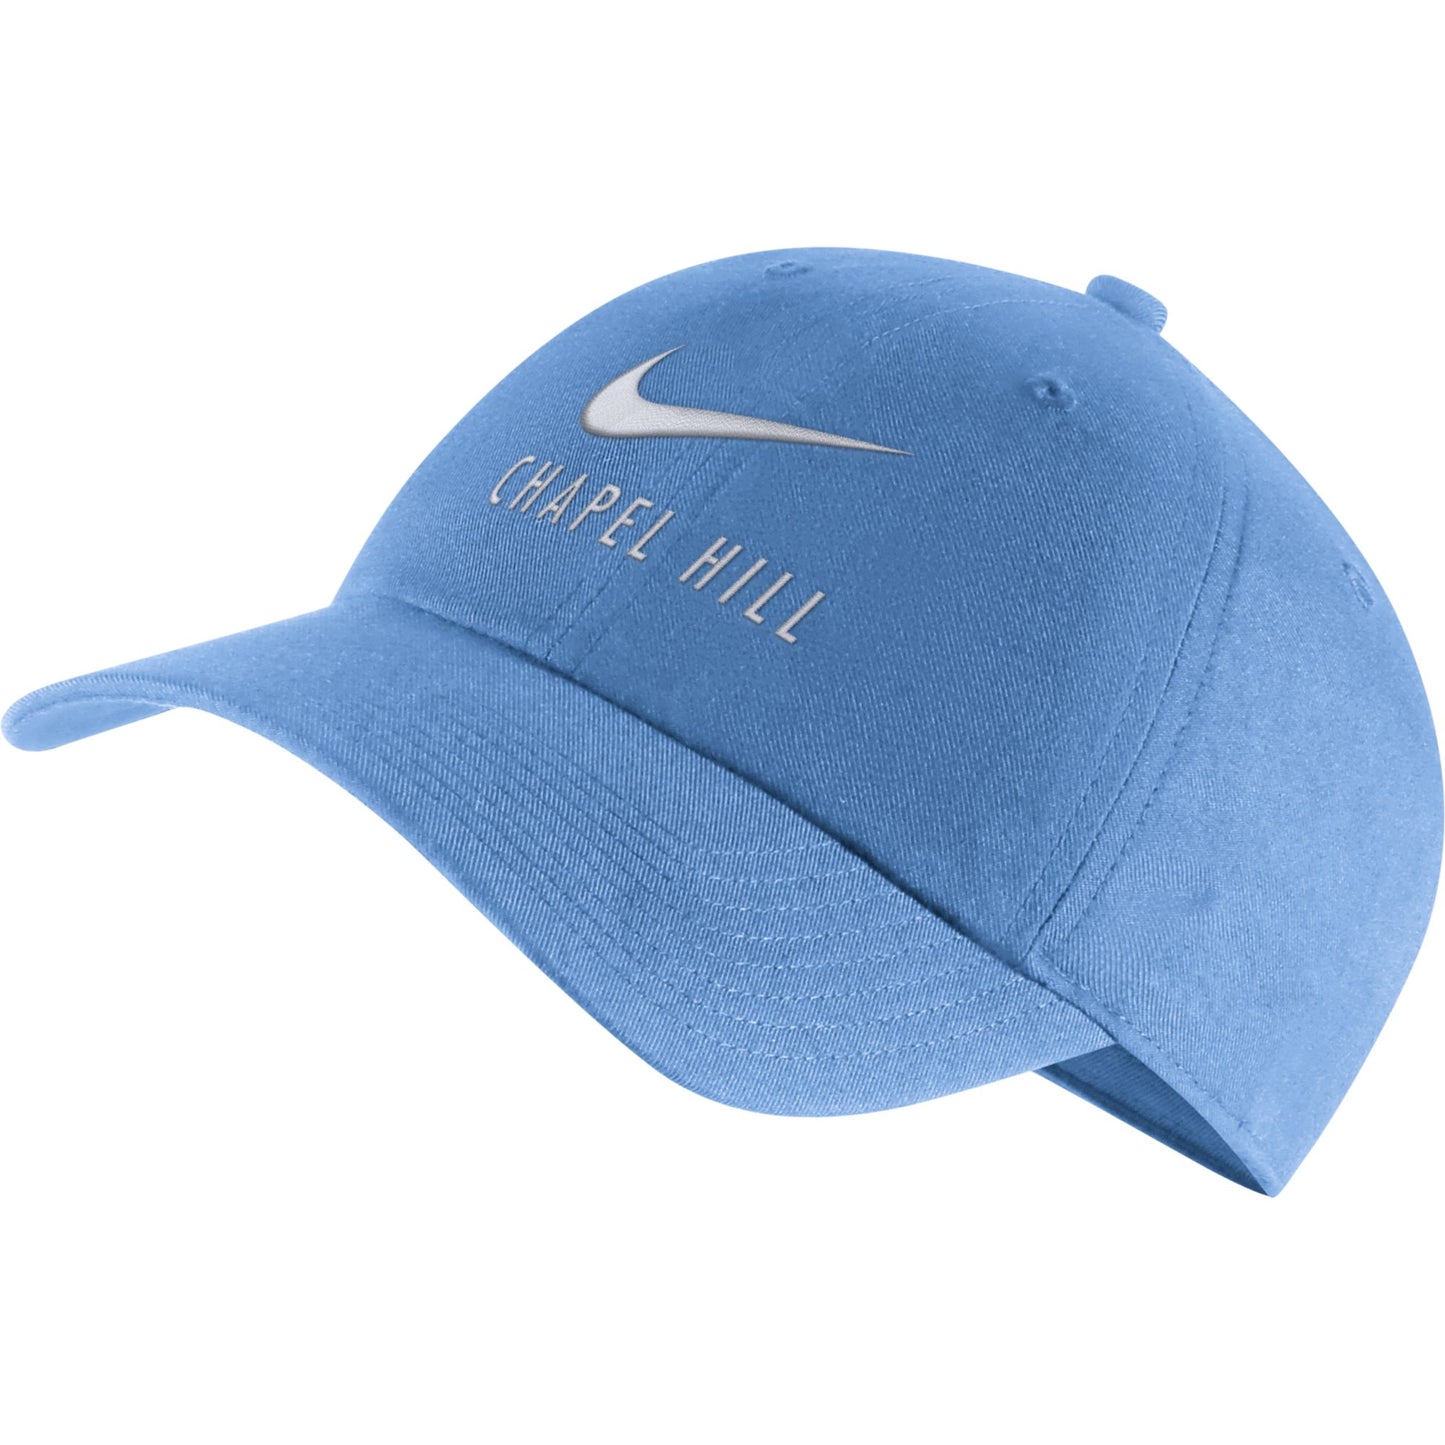 North Carolina Tar Heels Nike Swoosh Team Blue Chapel Hill Heritage 86 Adjustable Hat